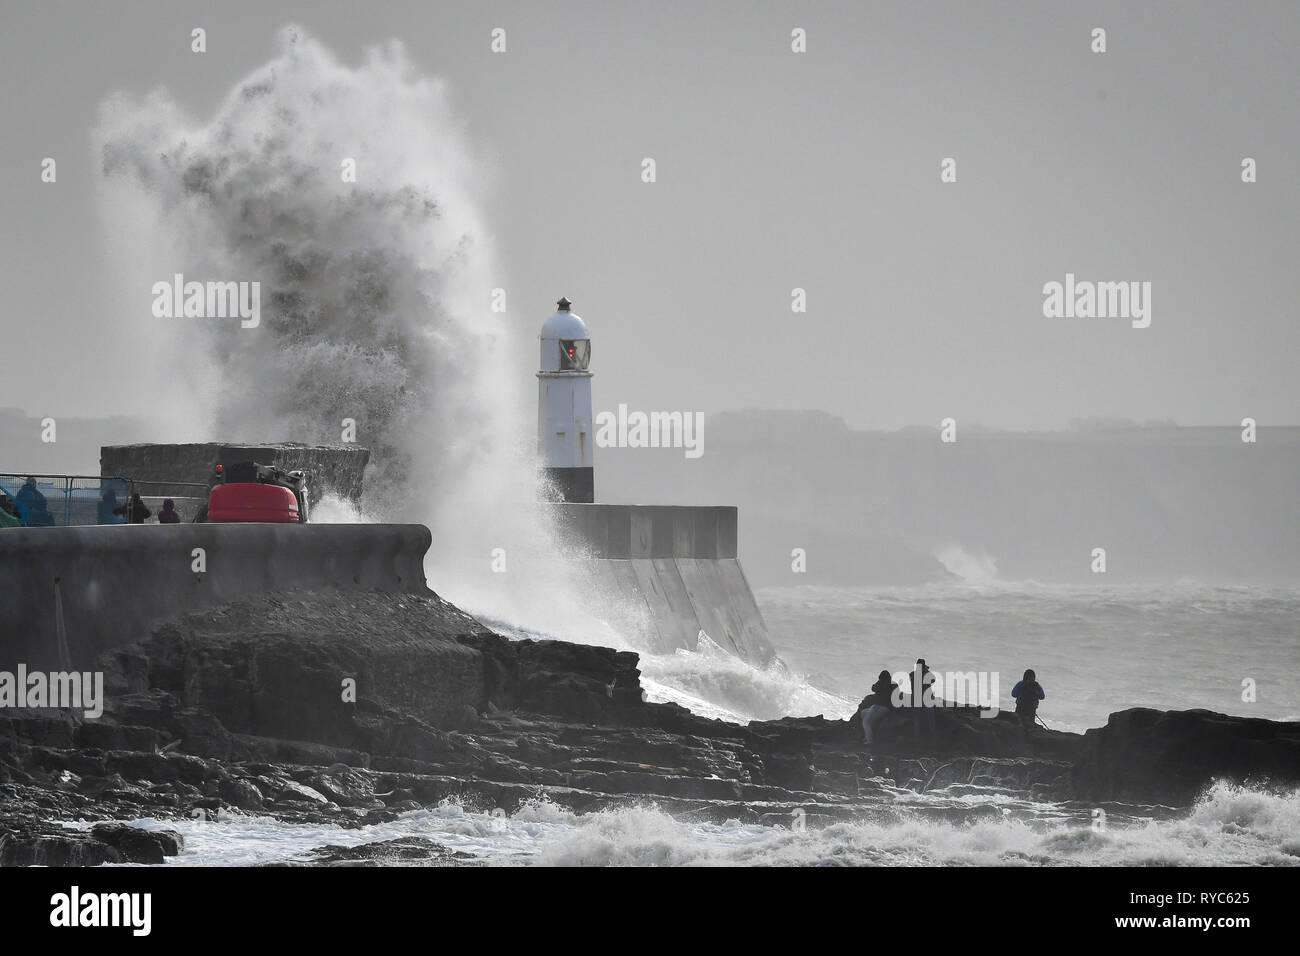 Riesige Wellen schlagen gegen die hafenmauer als Zuschauer von den Felsen aus sehen Sie in das Meer bei Porthcawl, Wales, in dem starke Regenfälle und starke Winde verursacht haben Reisen Störungen in einigen Teilen des Vereinigten Königreichs als Sturm Gareth Osten bewegt. Stockfoto